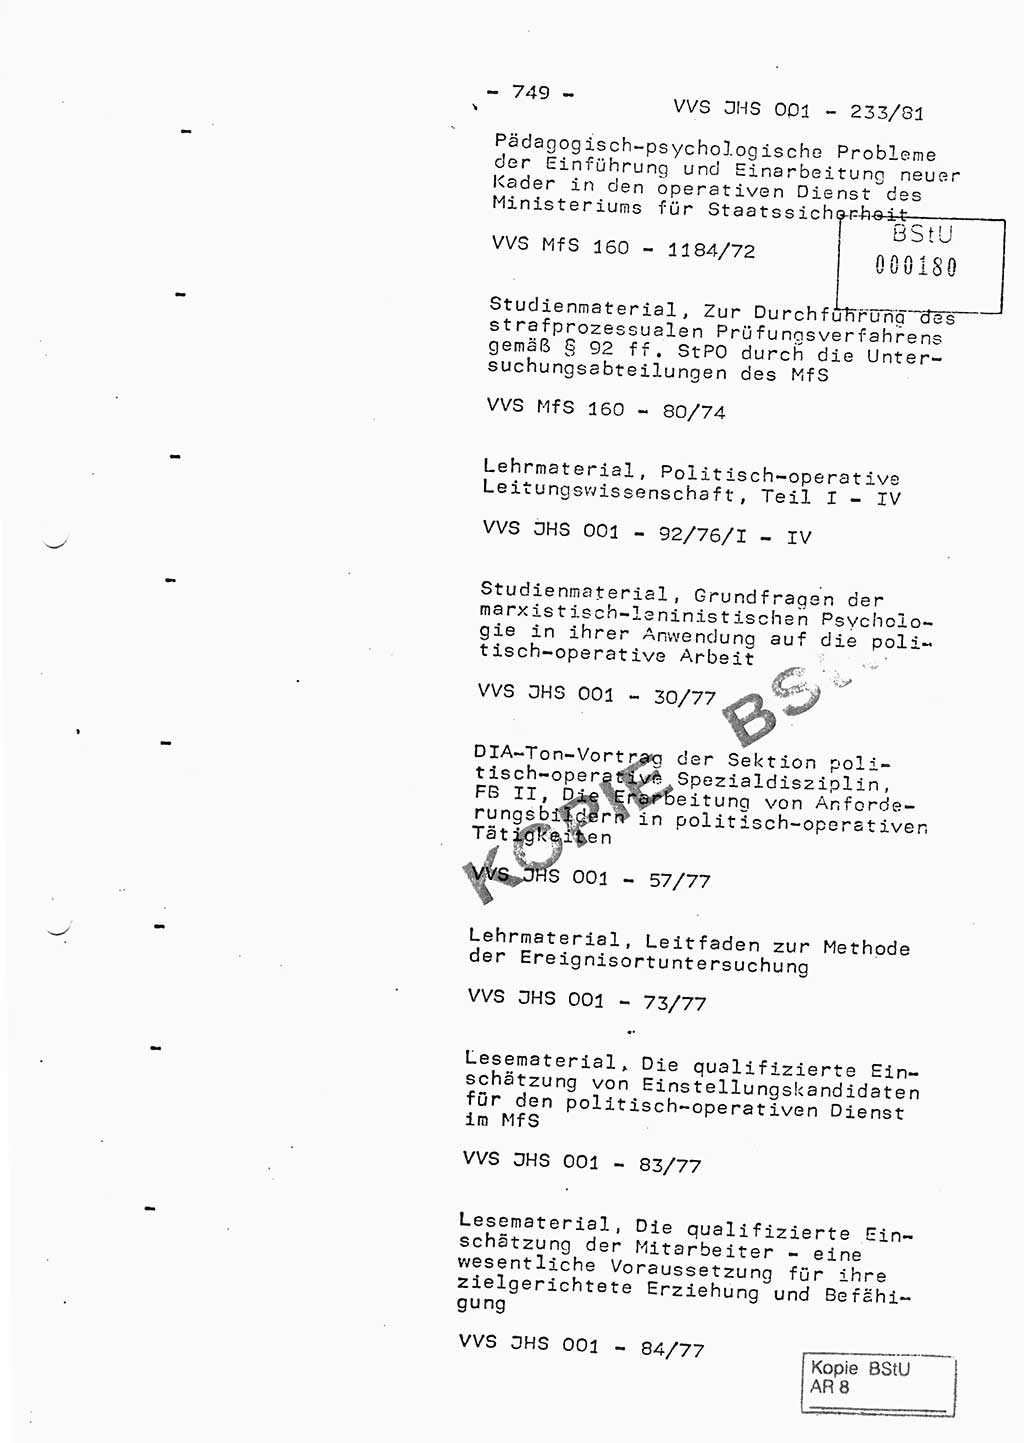 Dissertation Oberstleutnant Horst Zank (JHS), Oberstleutnant Dr. Karl-Heinz Knoblauch (JHS), Oberstleutnant Gustav-Adolf Kowalewski (HA Ⅸ), Oberstleutnant Wolfgang Plötner (HA Ⅸ), Ministerium für Staatssicherheit (MfS) [Deutsche Demokratische Republik (DDR)], Juristische Hochschule (JHS), Vertrauliche Verschlußsache (VVS) o001-233/81, Potsdam 1981, Blatt 749 (Diss. MfS DDR JHS VVS o001-233/81 1981, Bl. 749)